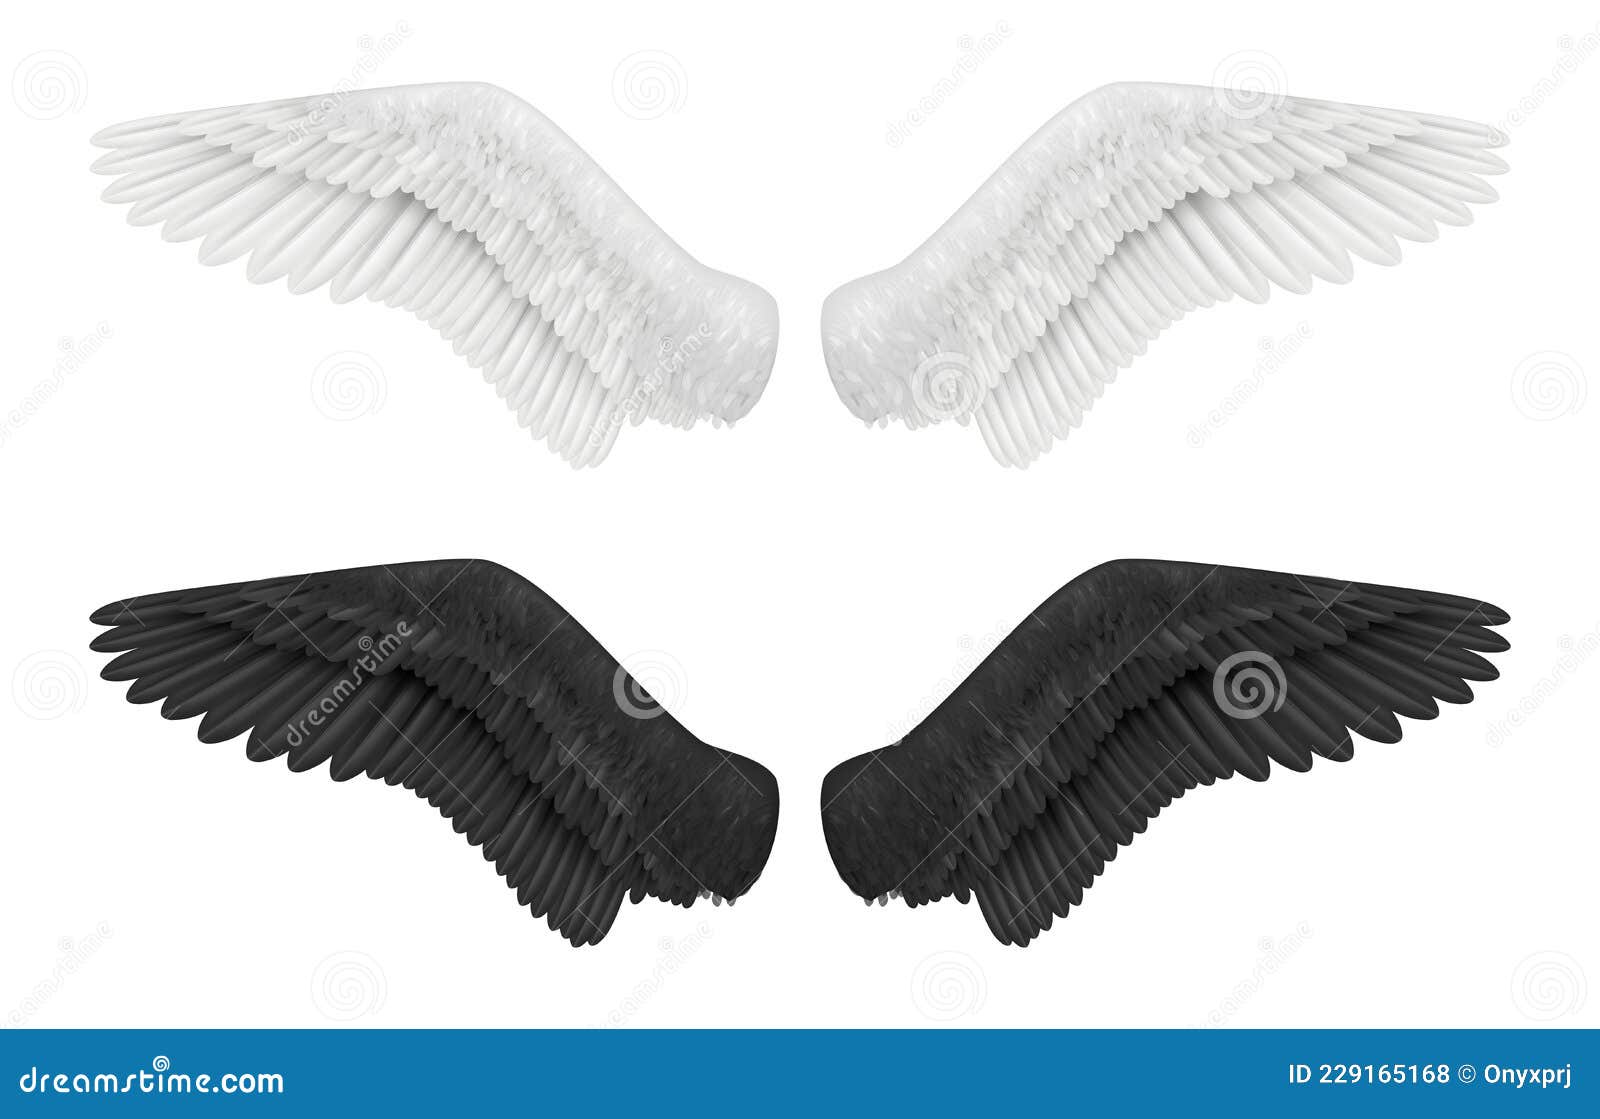 翼展. 带有翅膀的徽章. 矢量图符号白色隔离的黑翼 库存例证. 插画 包括有 徽标, 收集, 装饰品, 纹章学 - 192035218